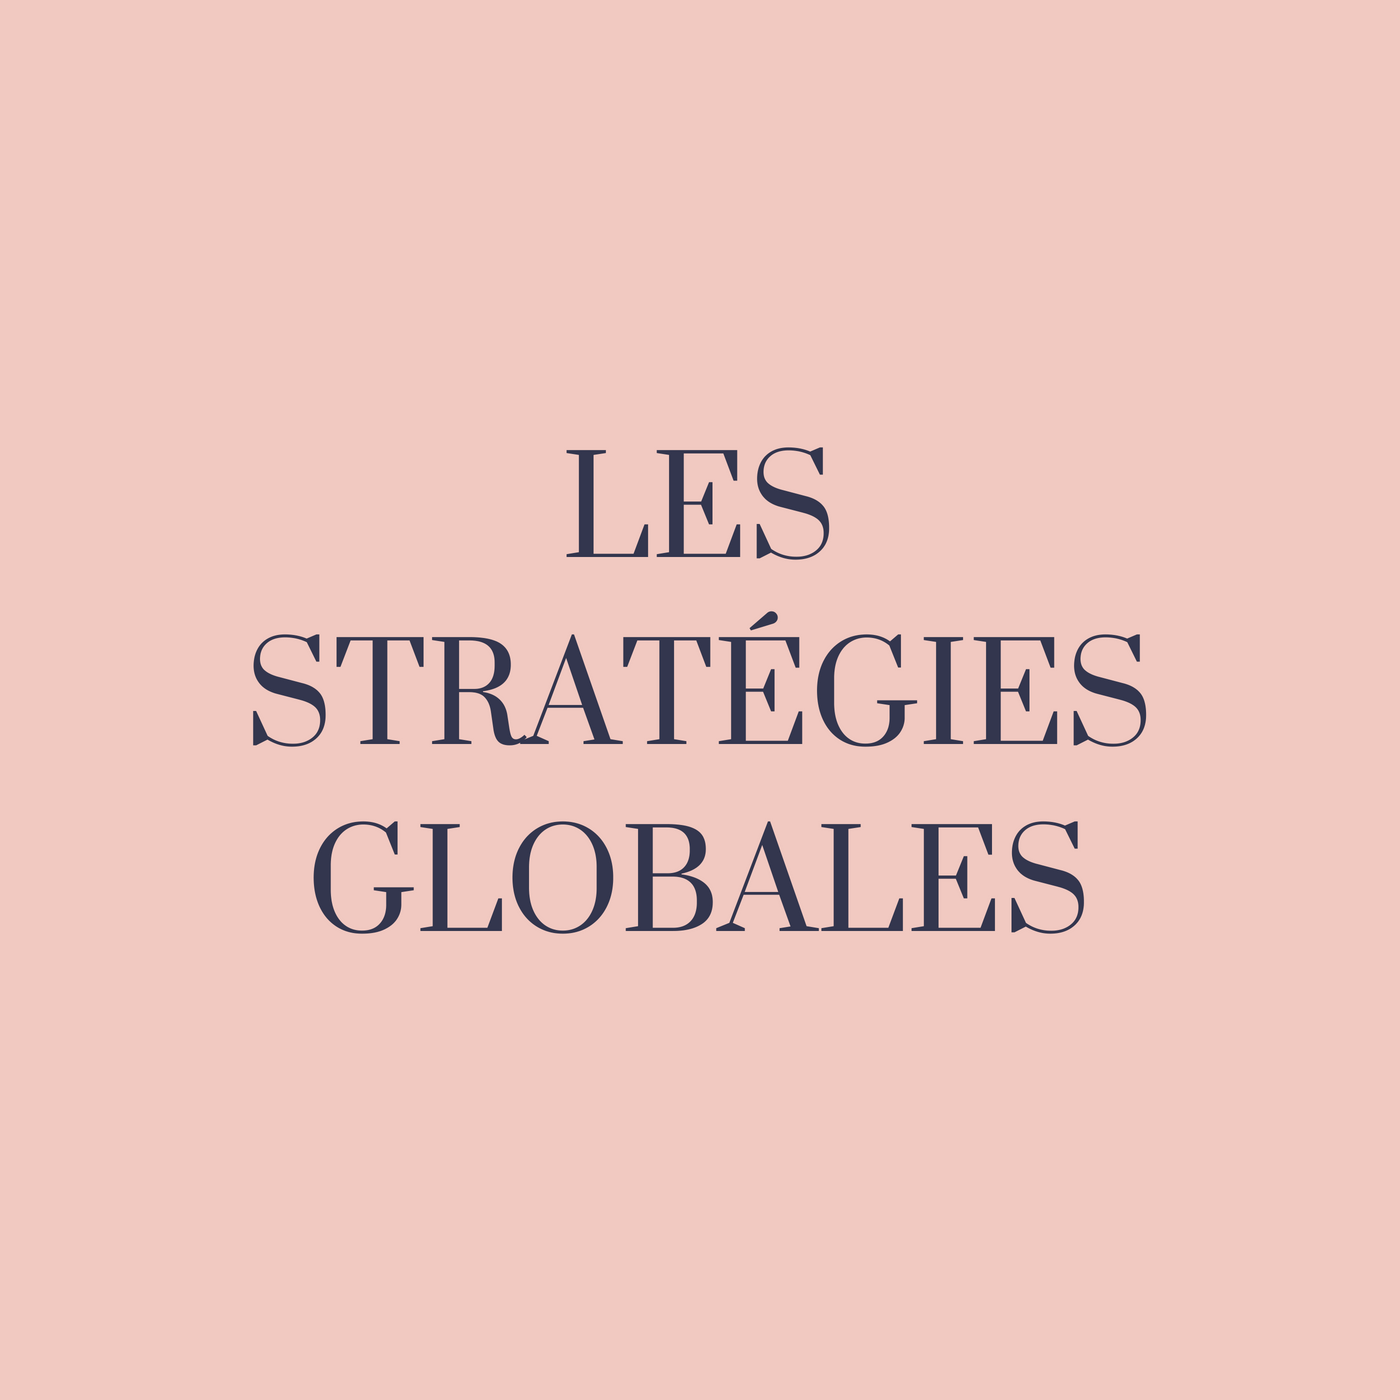 Les stratégies globales